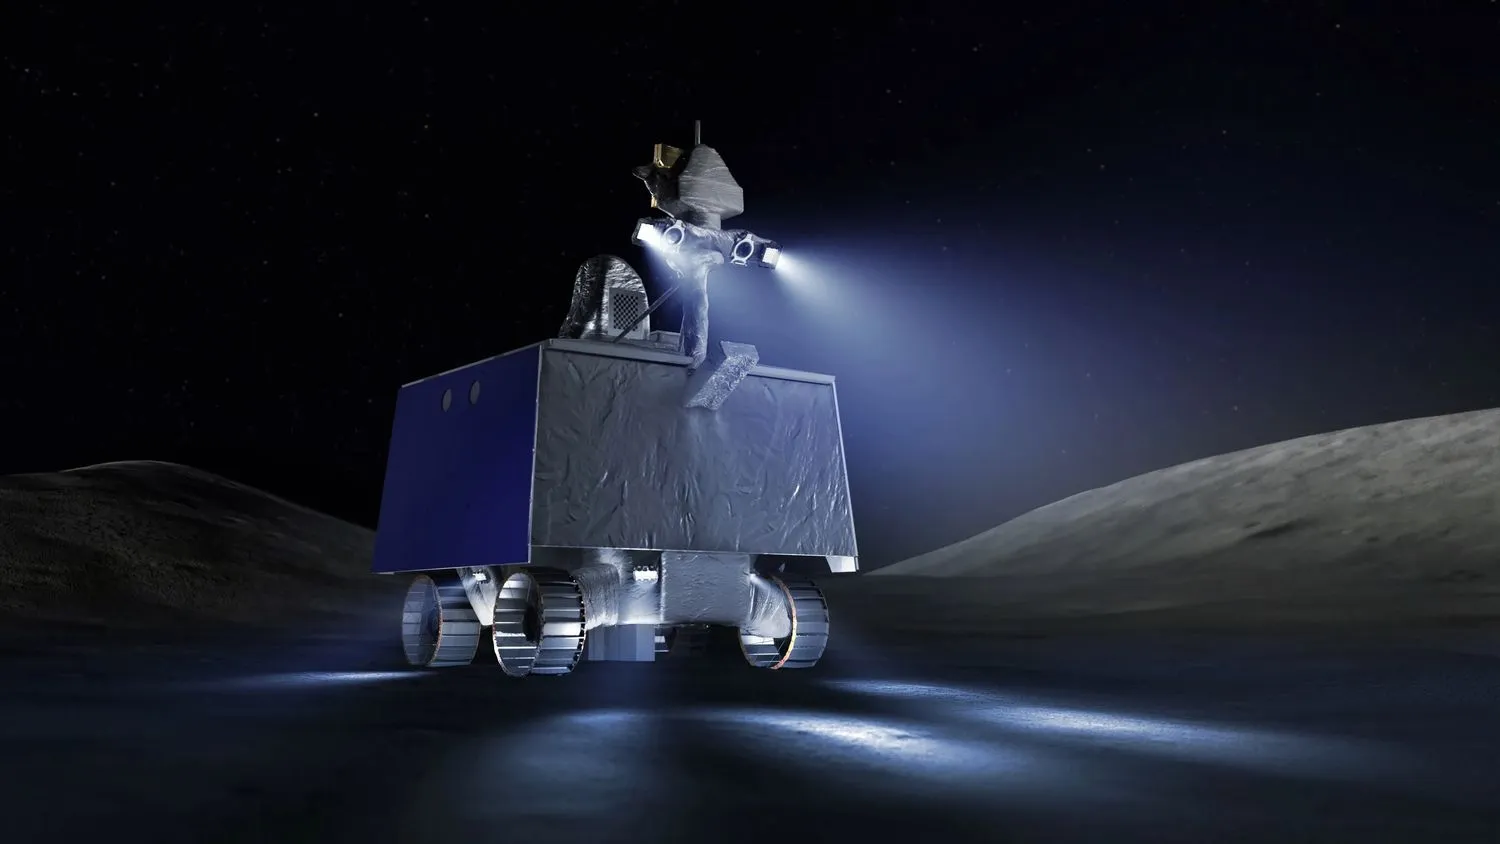 Illustration eines kastenförmigen silbernen Rovers auf der Mondoberfläche bei Nacht